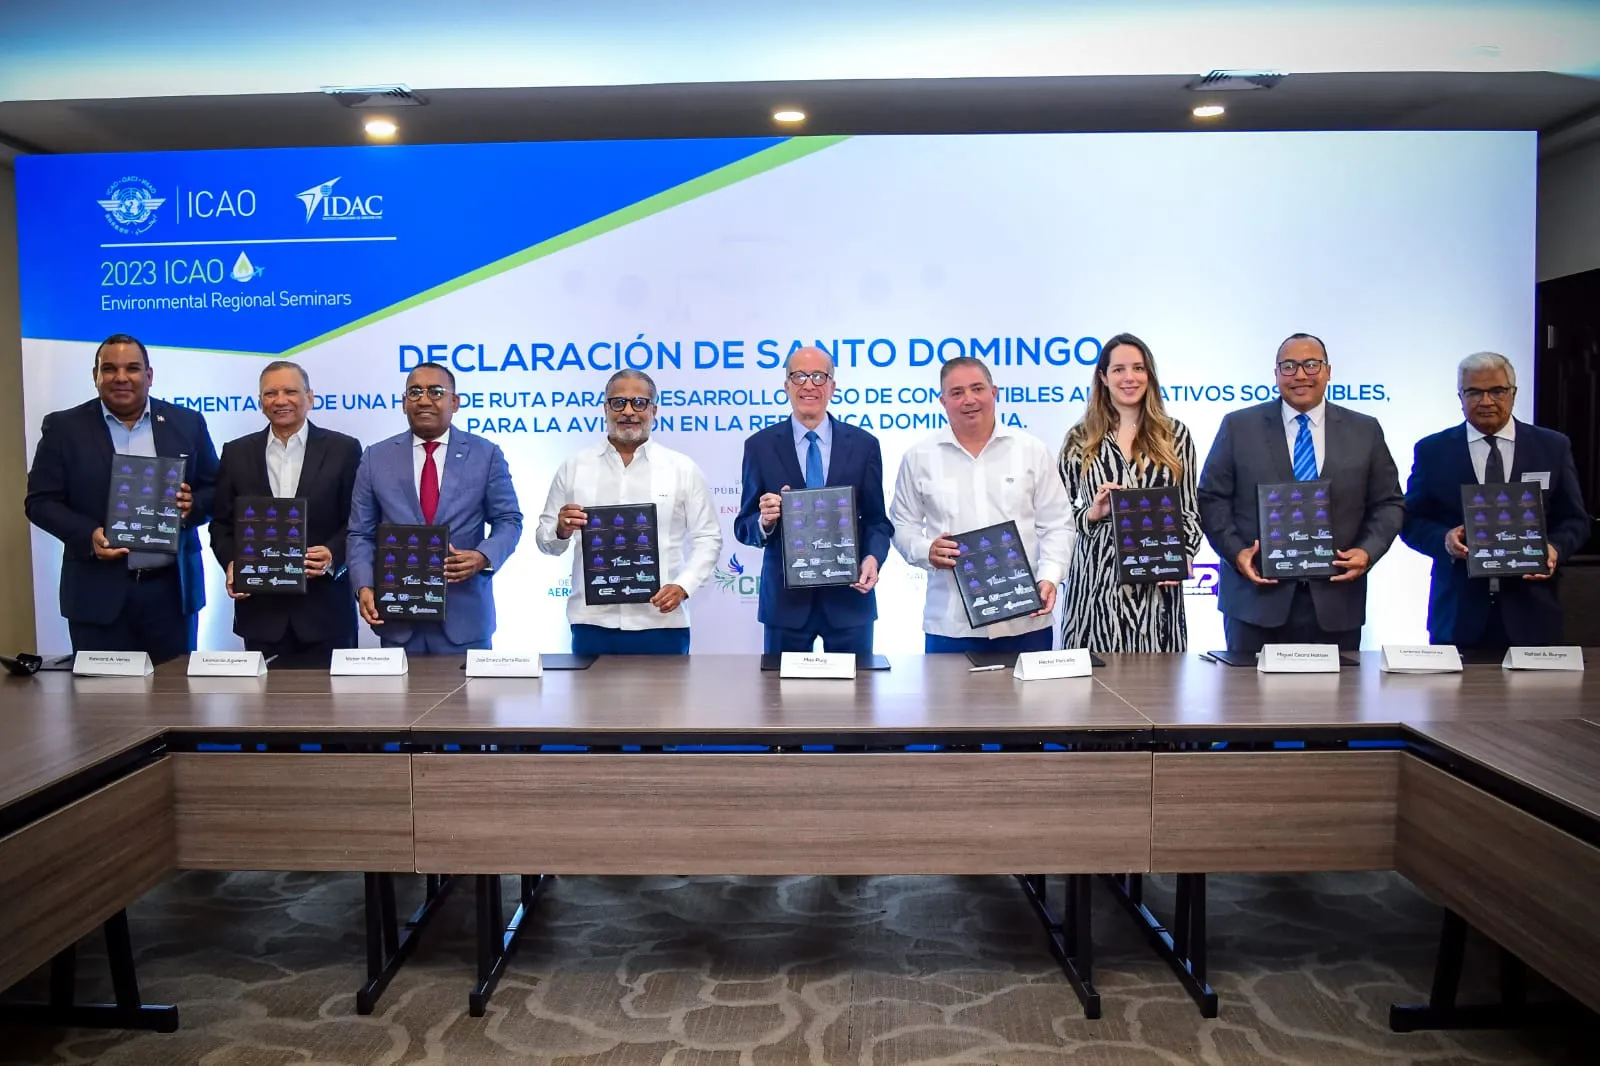 Declaración de Santo Domingo procura promover uso de energía limpia en la aviación